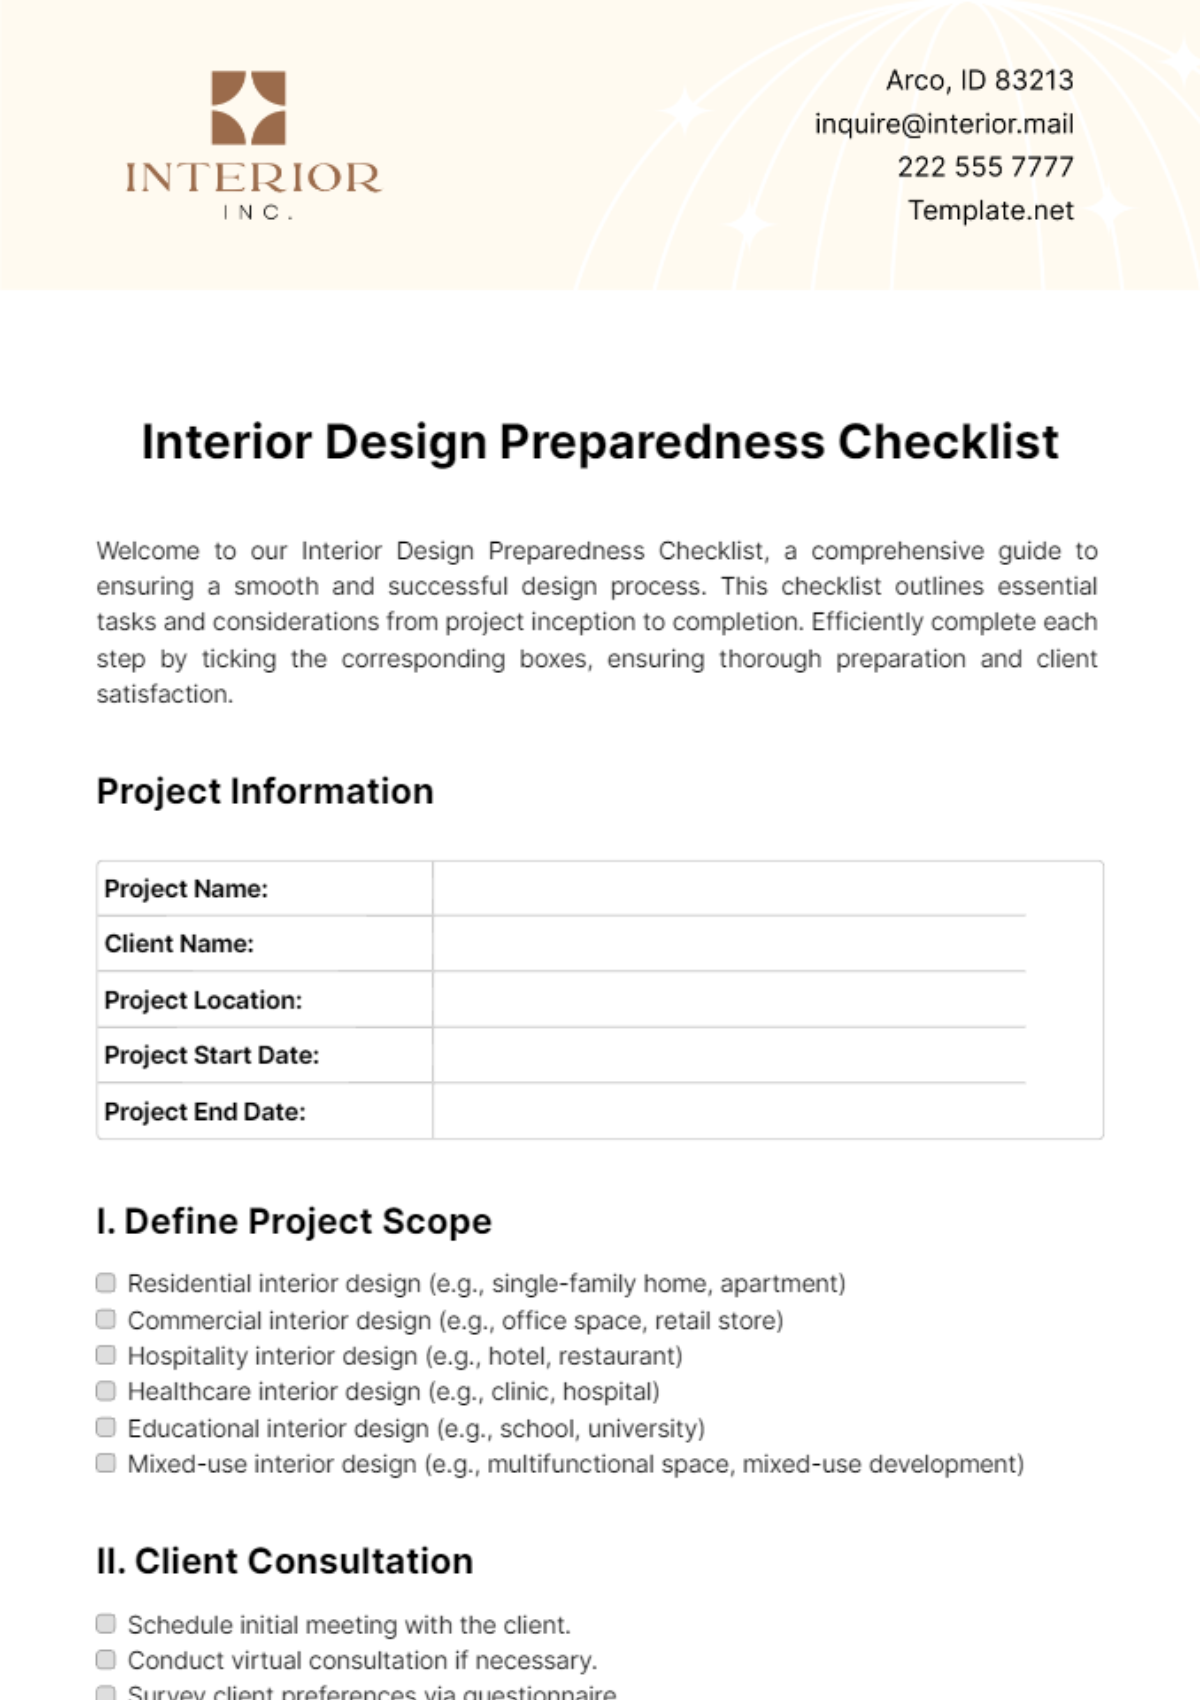 Interior Design Preparedness Checklist Template